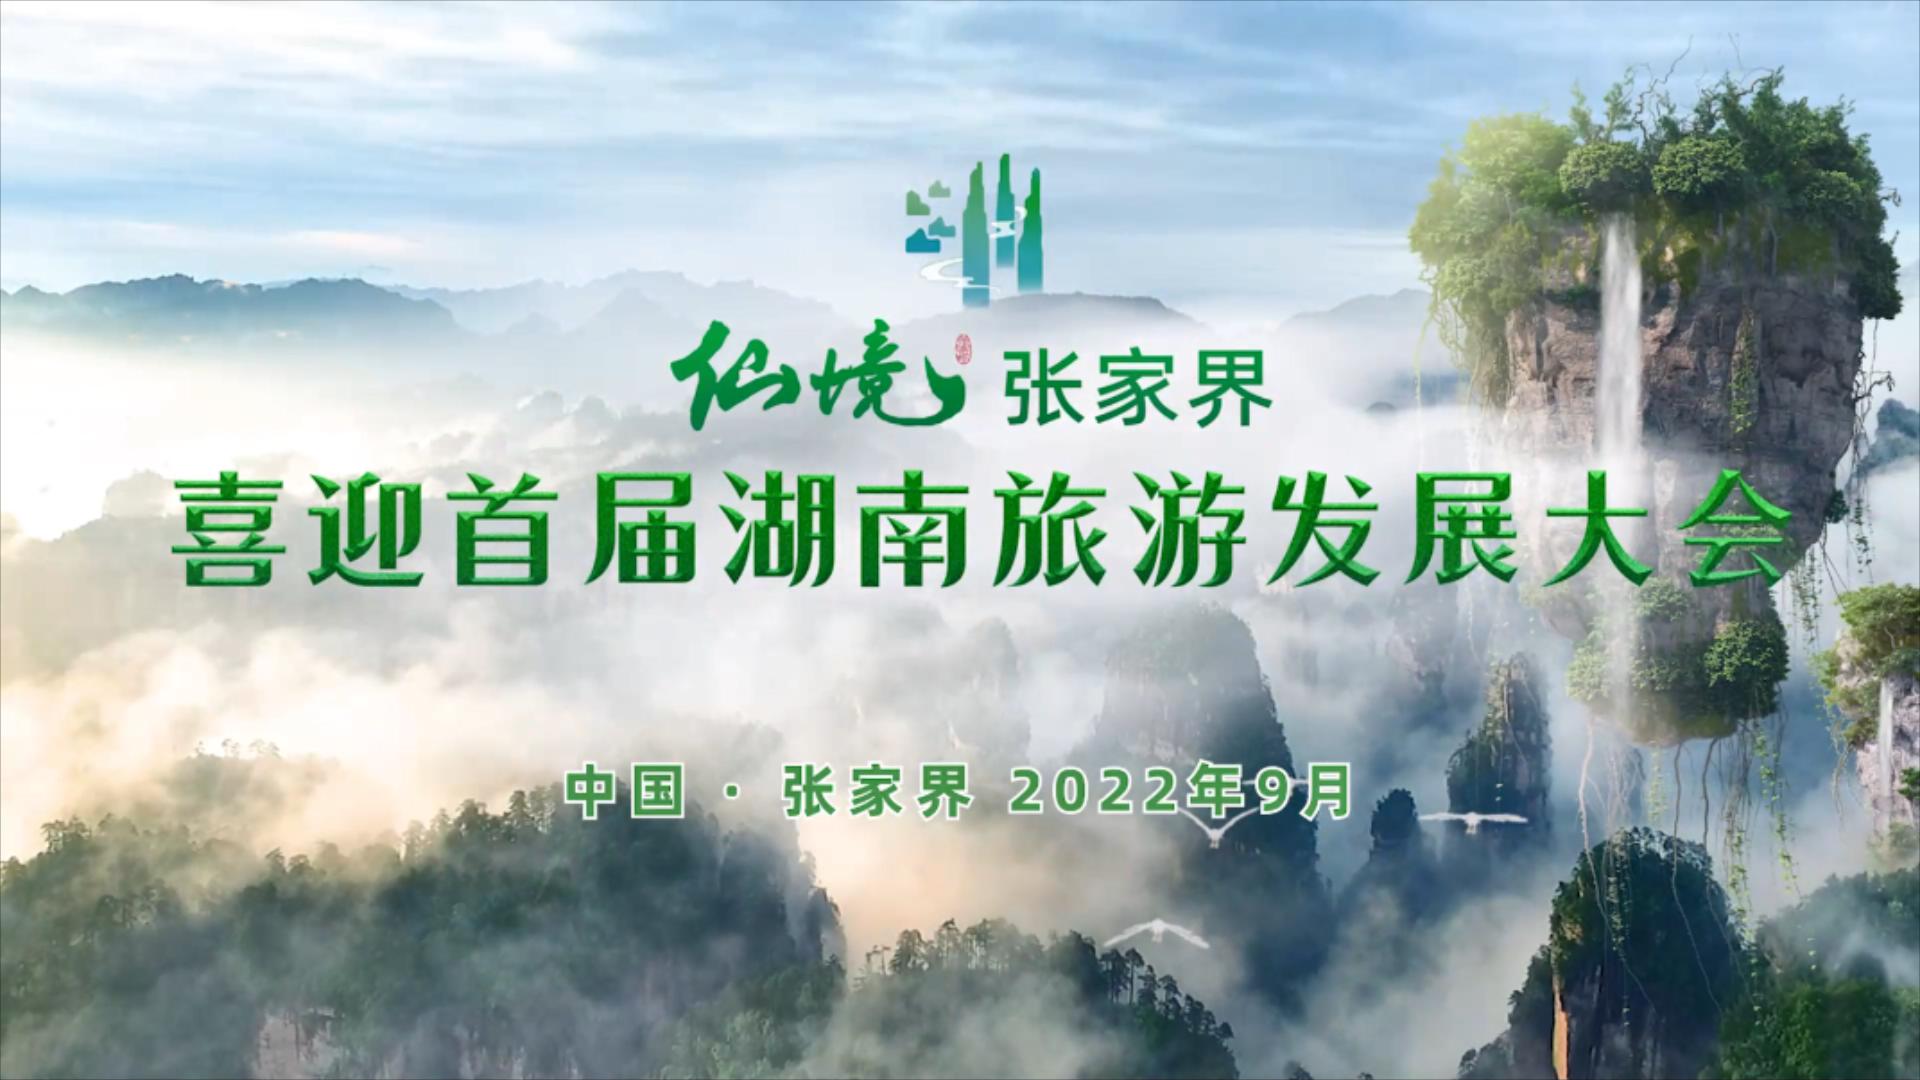 金秋九月 相約湖南  2022年湖南首屆旅遊發展大會歡迎您